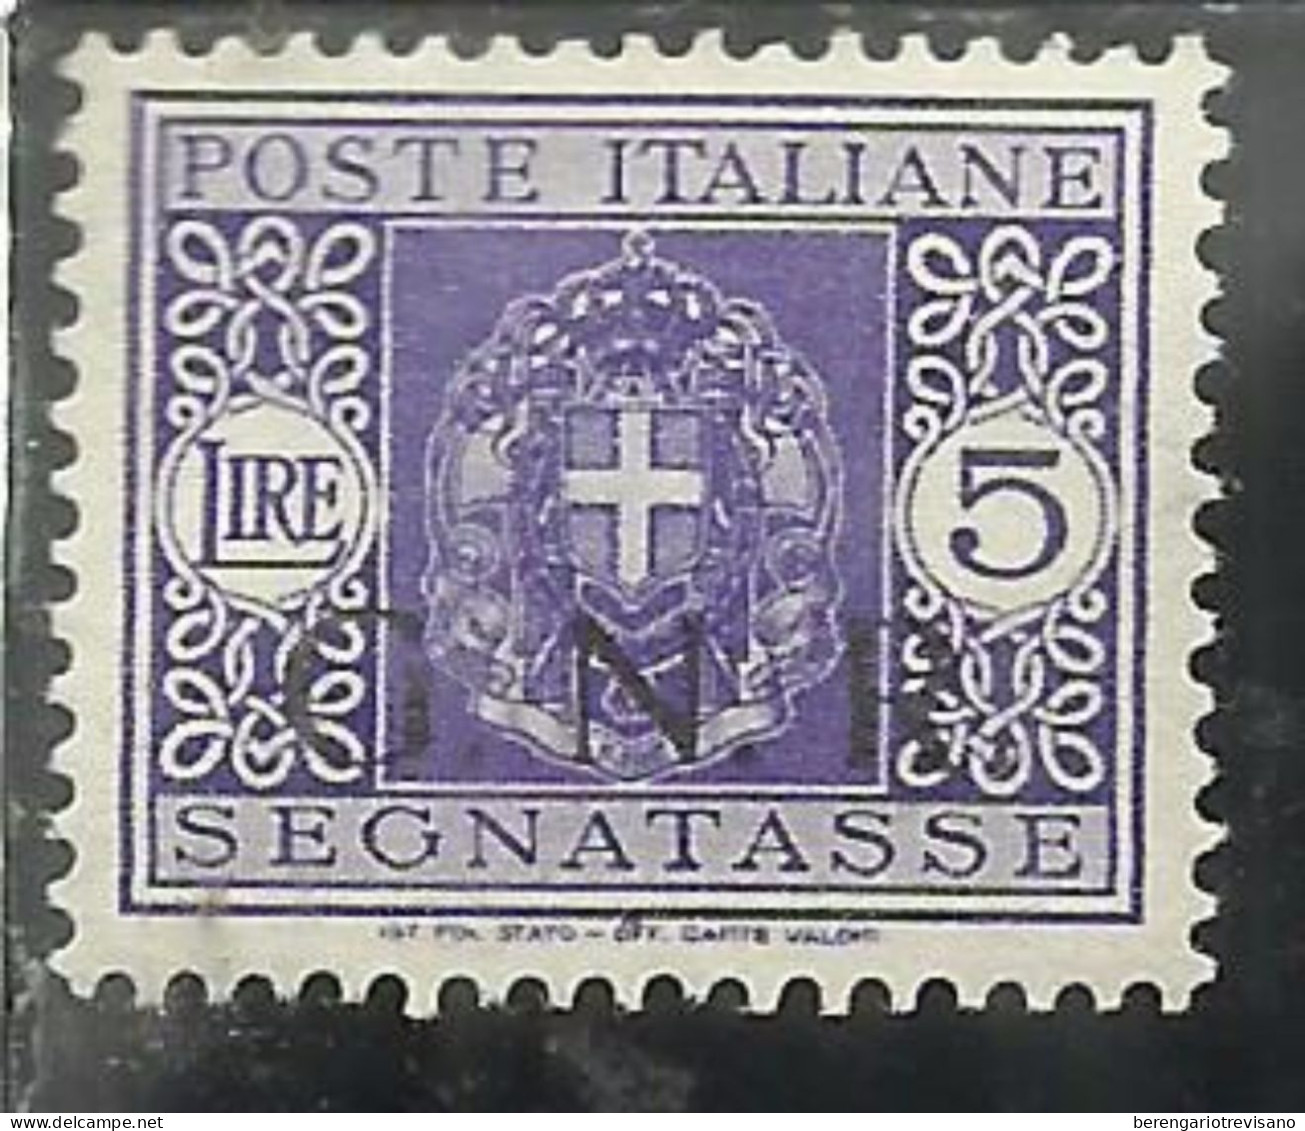 ITALIA REGNO ITALY KINGDOM 1944 REPUBBLICA SOCIALE ITALIANA RSI G.N.R.SEGNATASSE TAXES TASSE POSTAGE DUE GNR LIRE 5 MNH - Postage Due